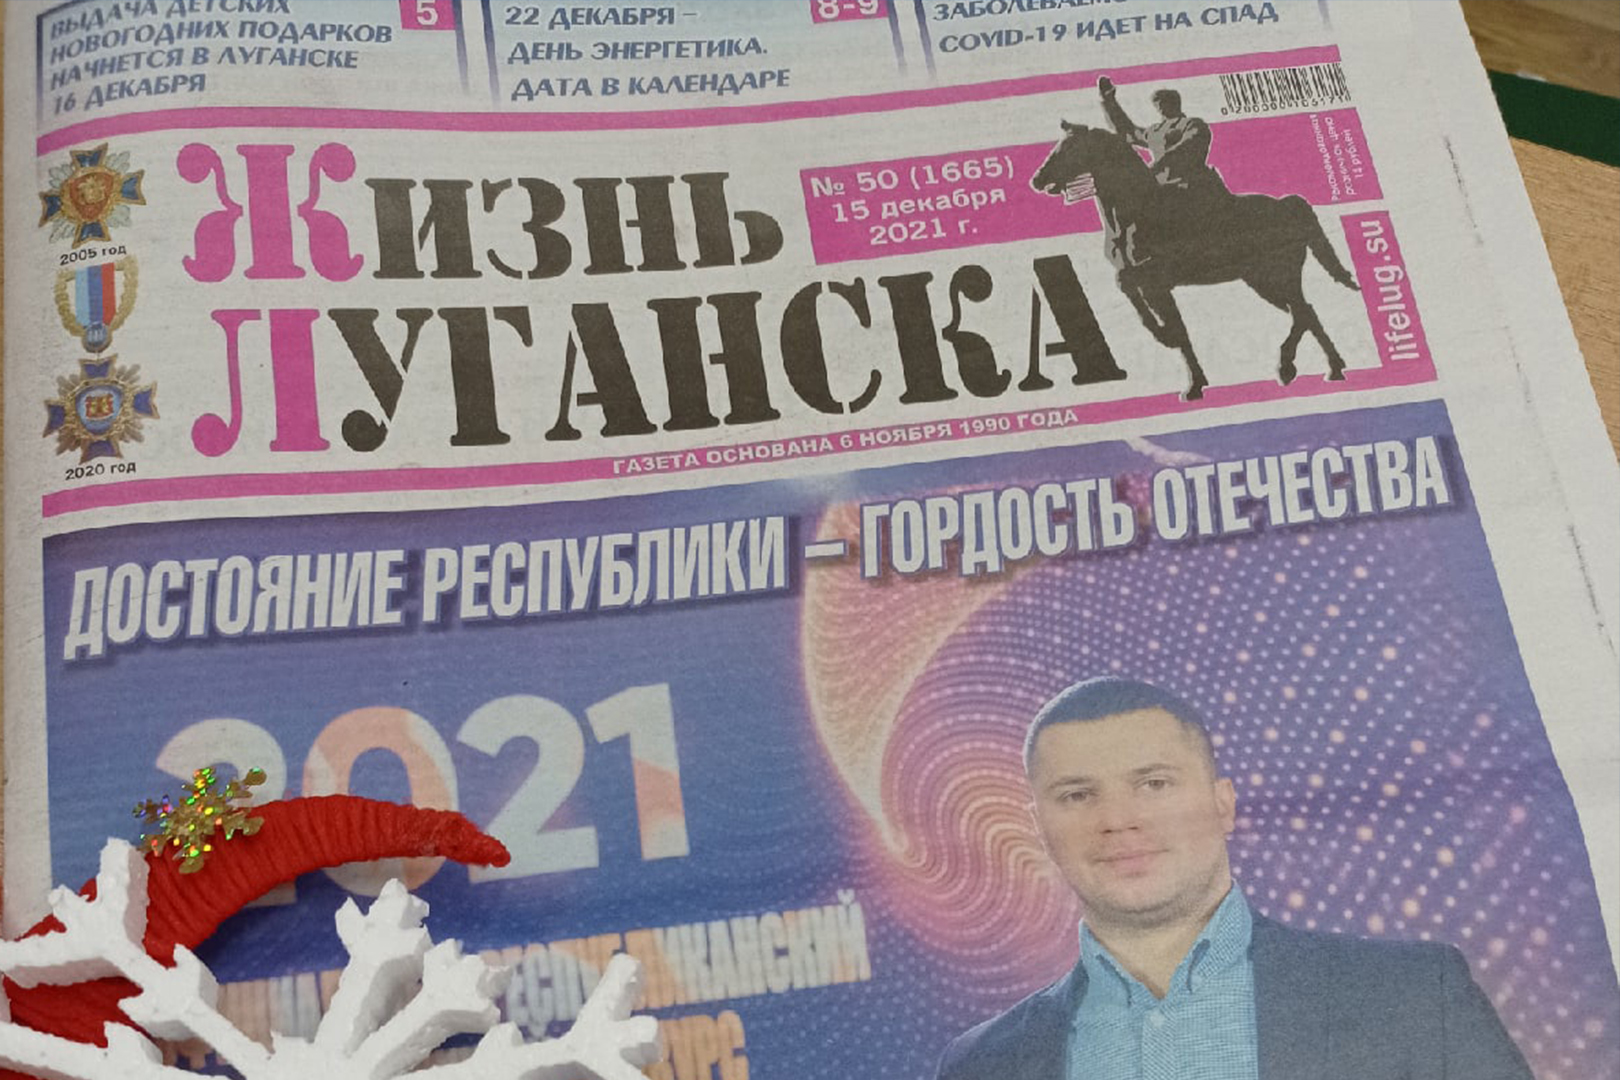 В новом выпуске газеты «Жизнь Луганска» актеры театра поделились своими новогодними впечатлениями и поздравили зрителей